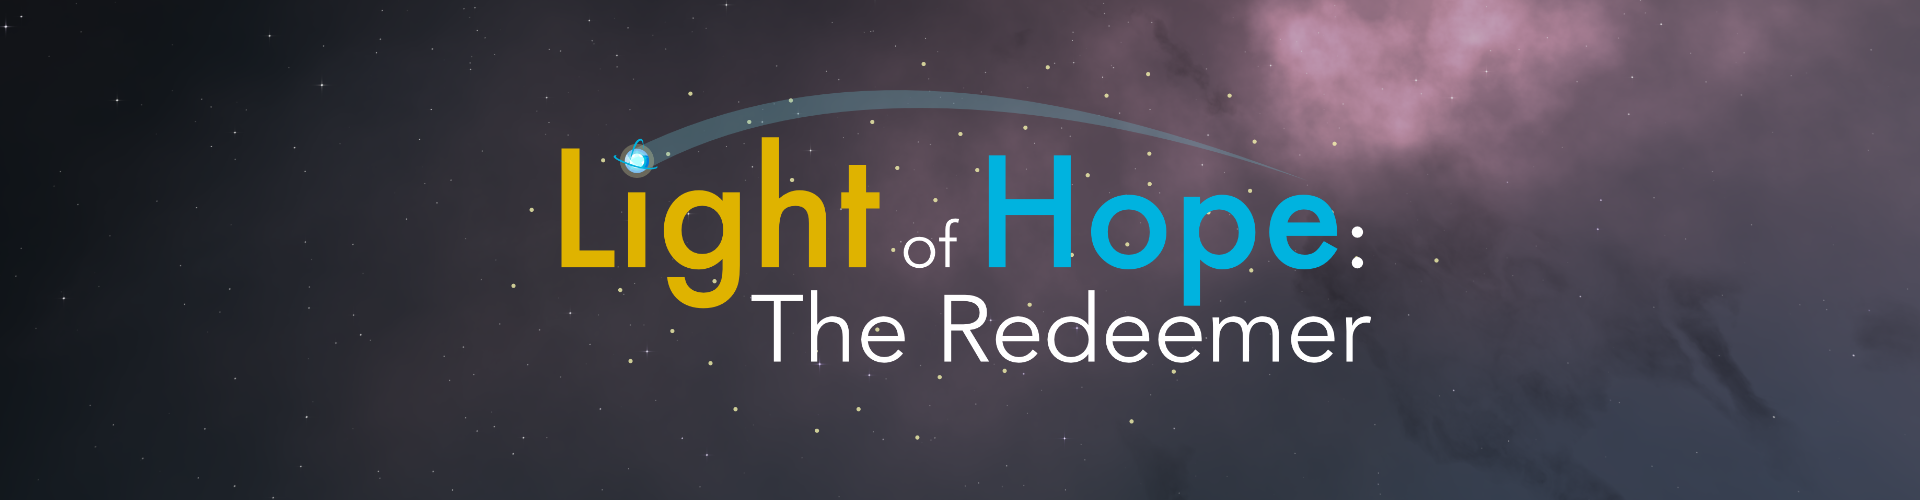 Light of Hope: The Redeemer [Tech Test]